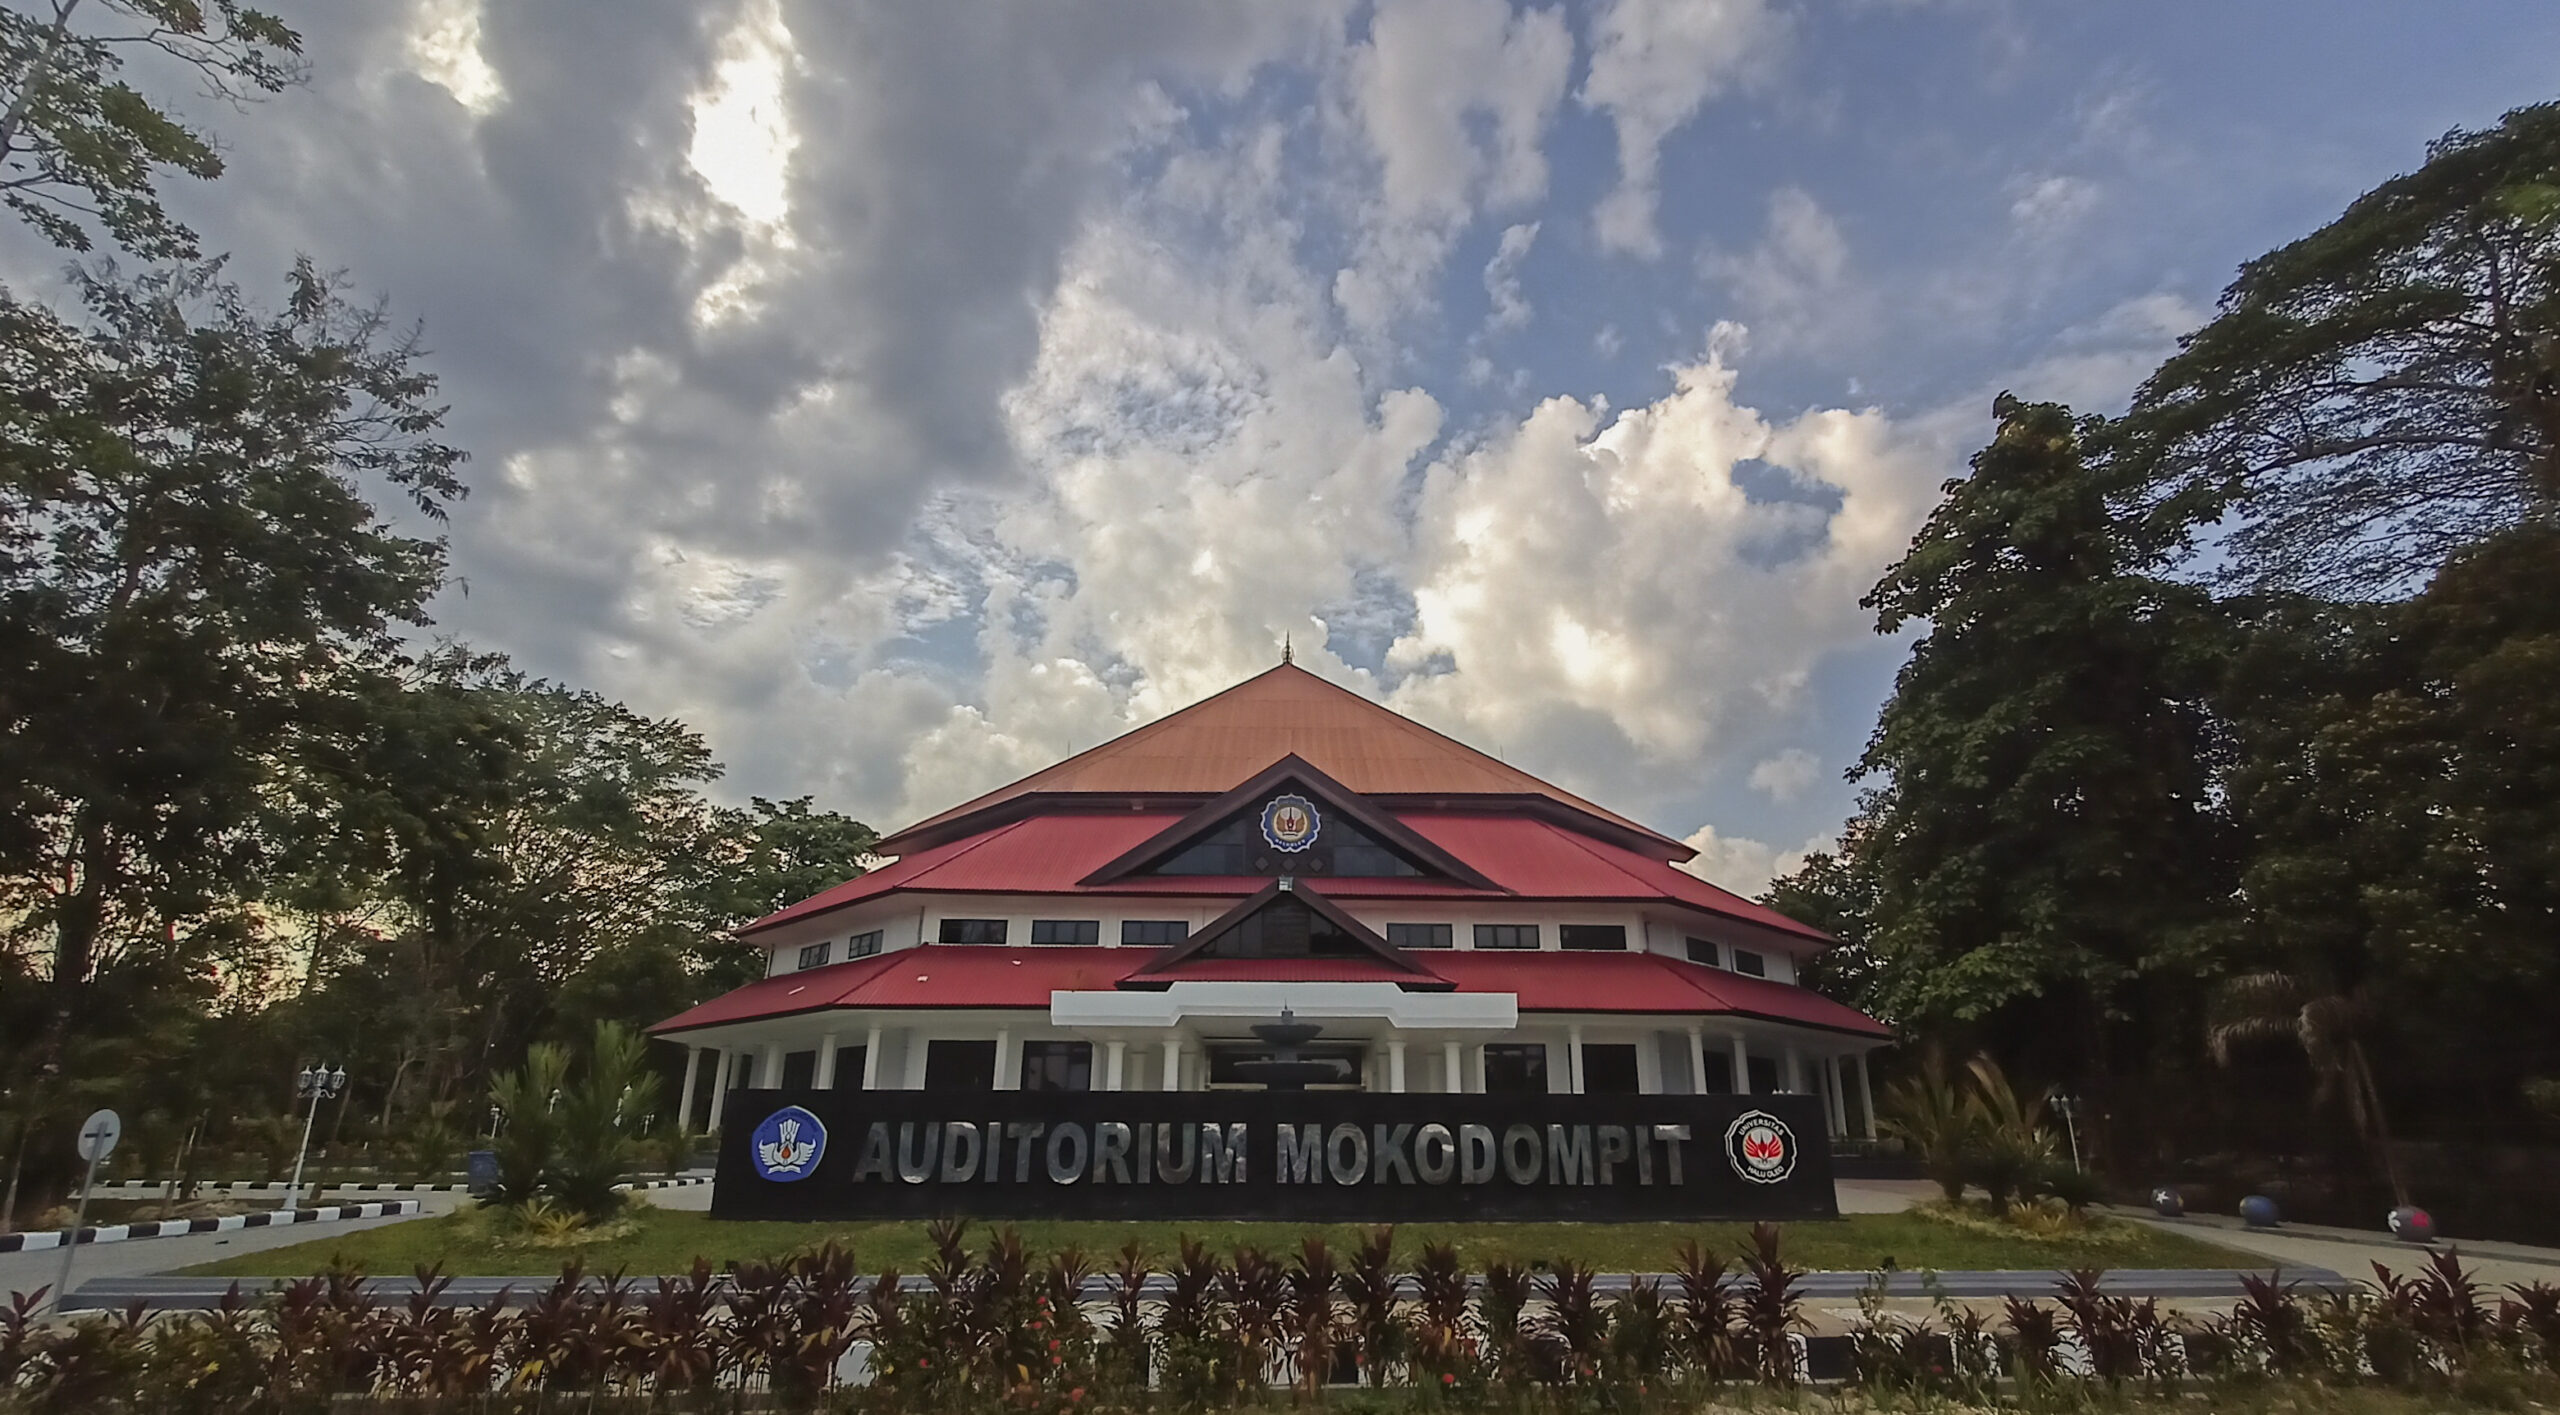 Auditorium Mokodompit